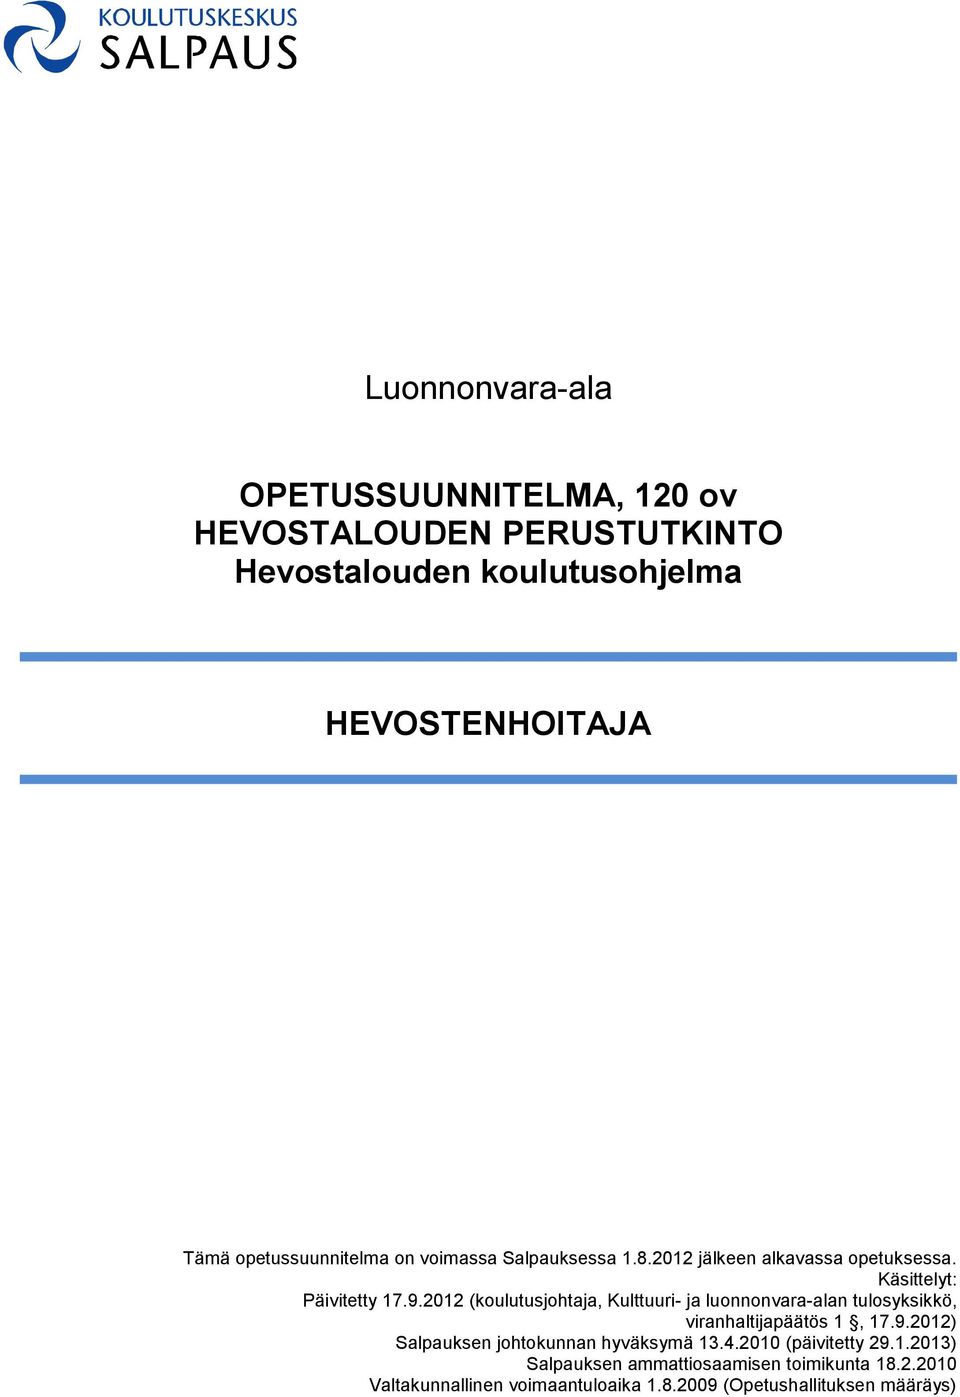 2012 (koulutusjohtaja, Kulttuuri- ja luonnonvara-alan tulosyksikkö, viranhaltijapäätös 1, 17.9.